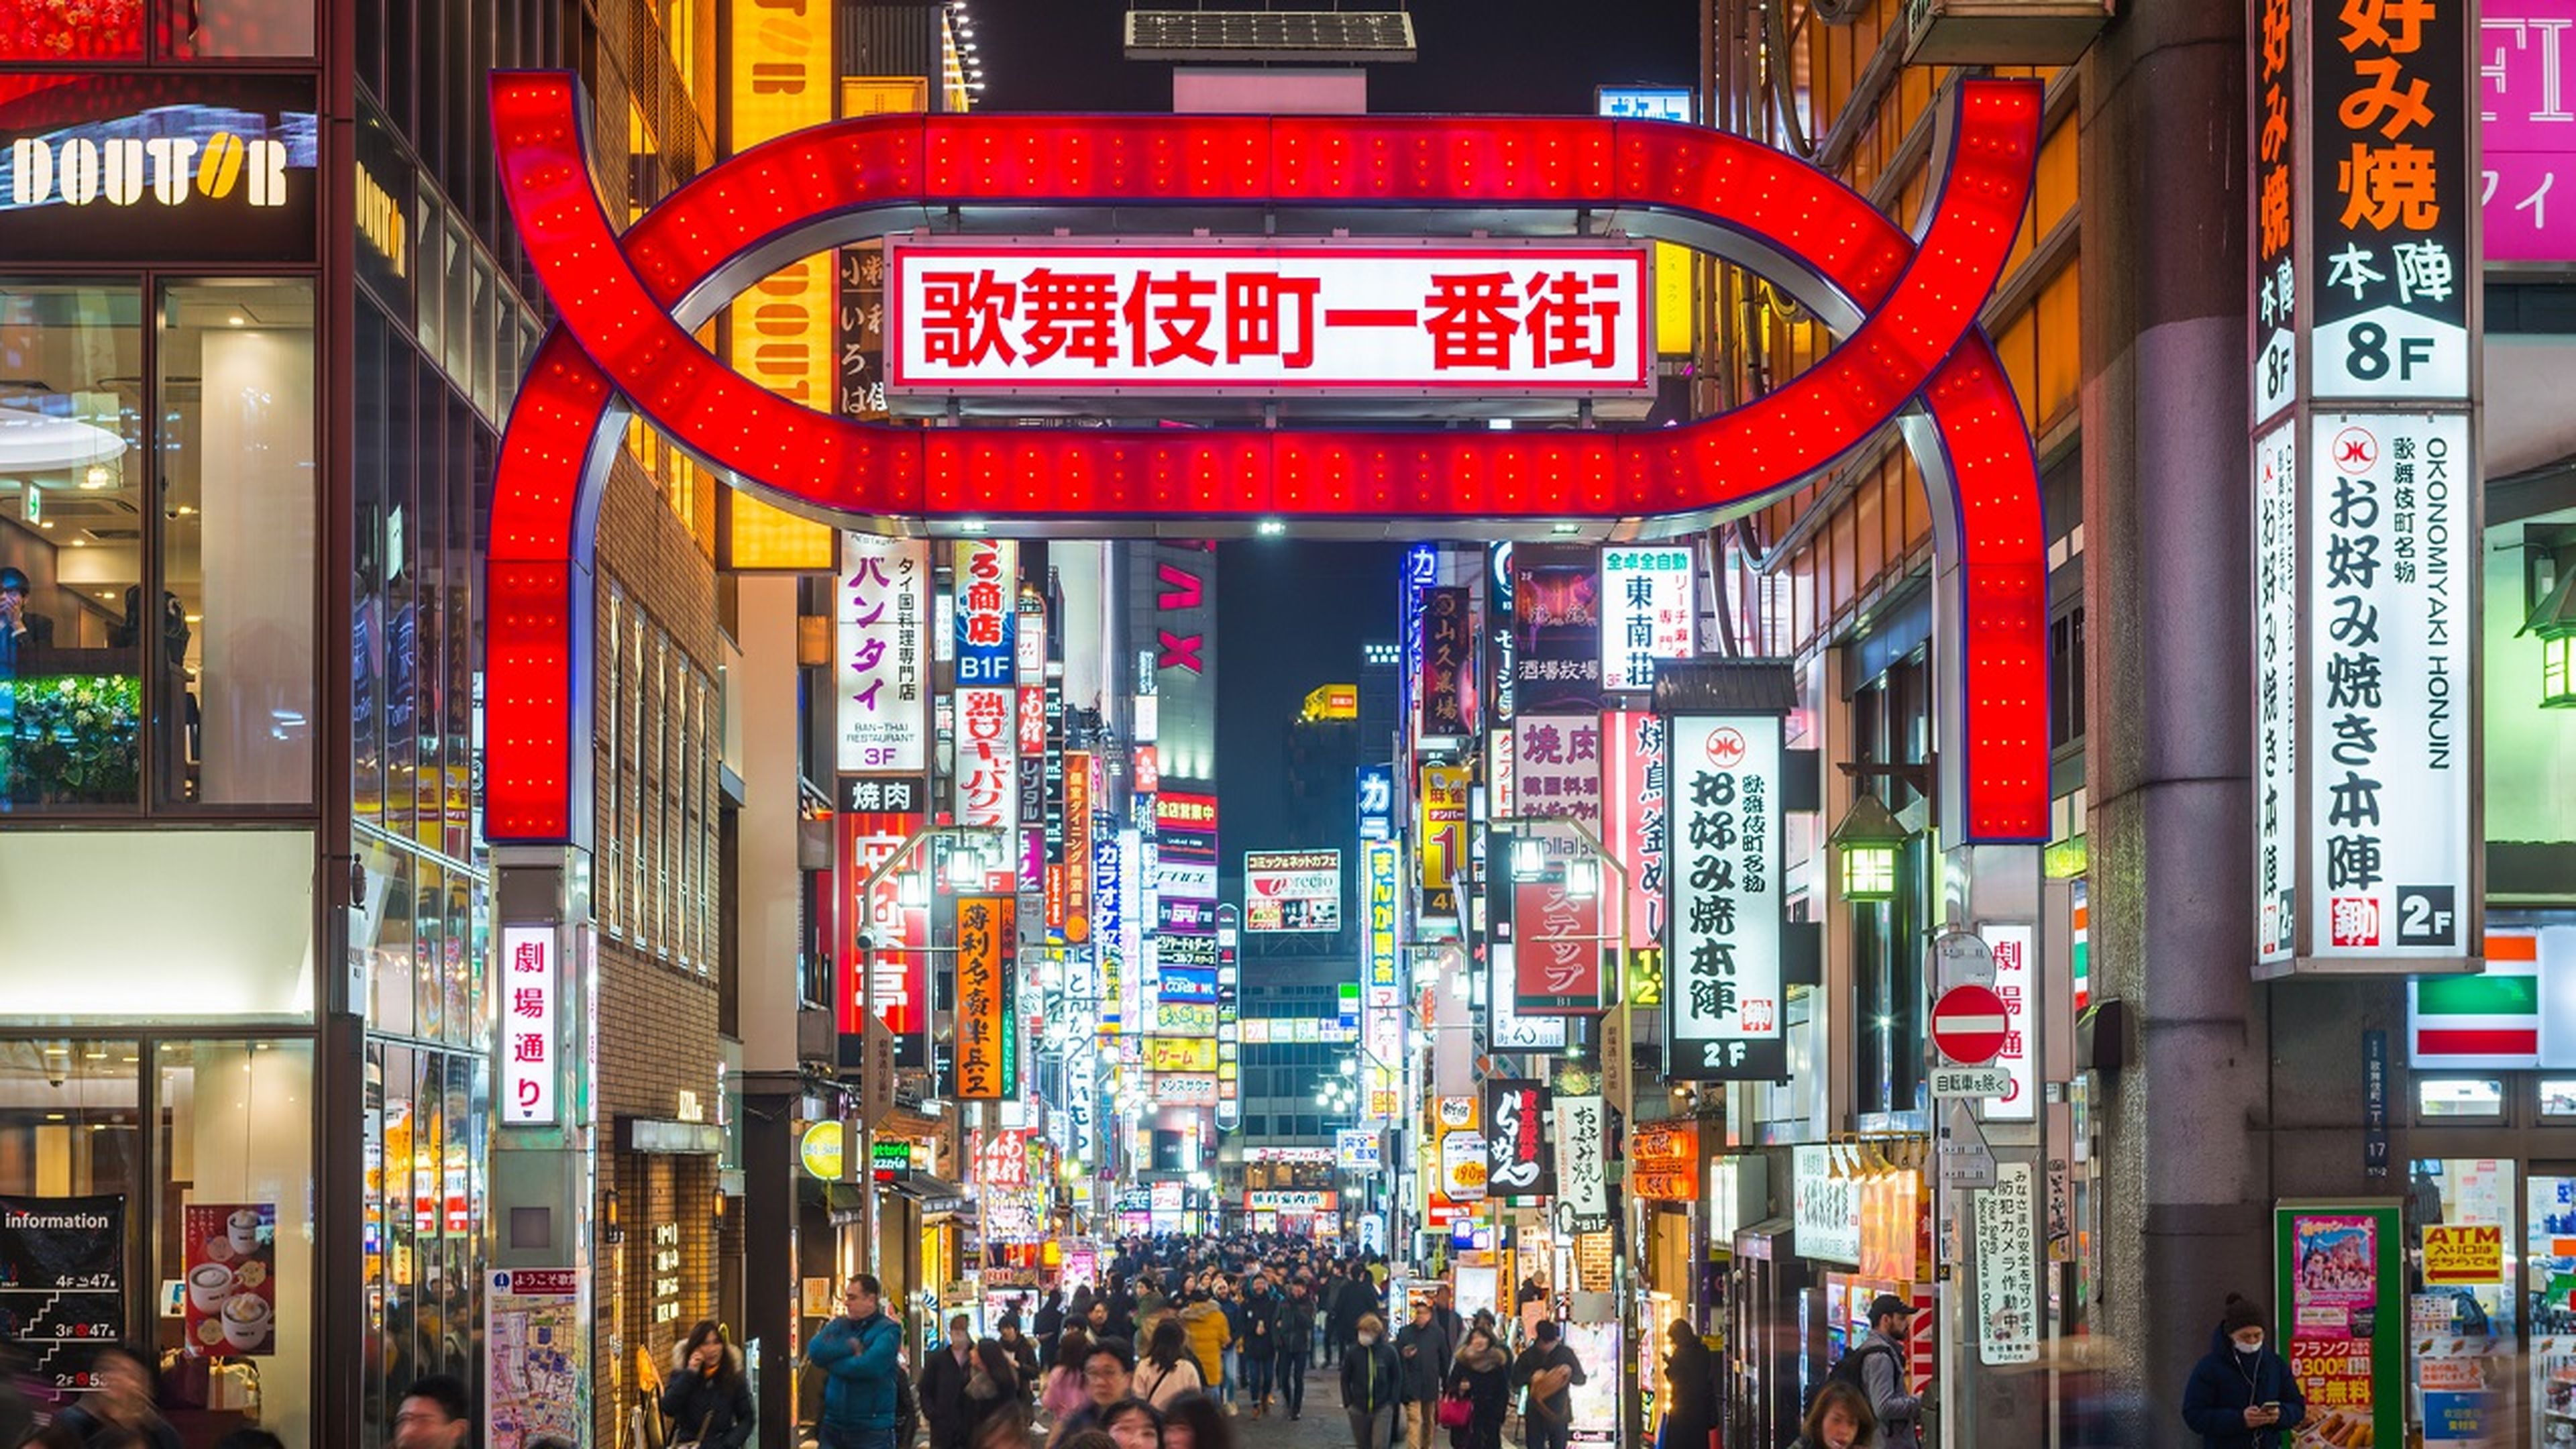 He viajado a Japón, y estas son las 5 cosas más locas del país